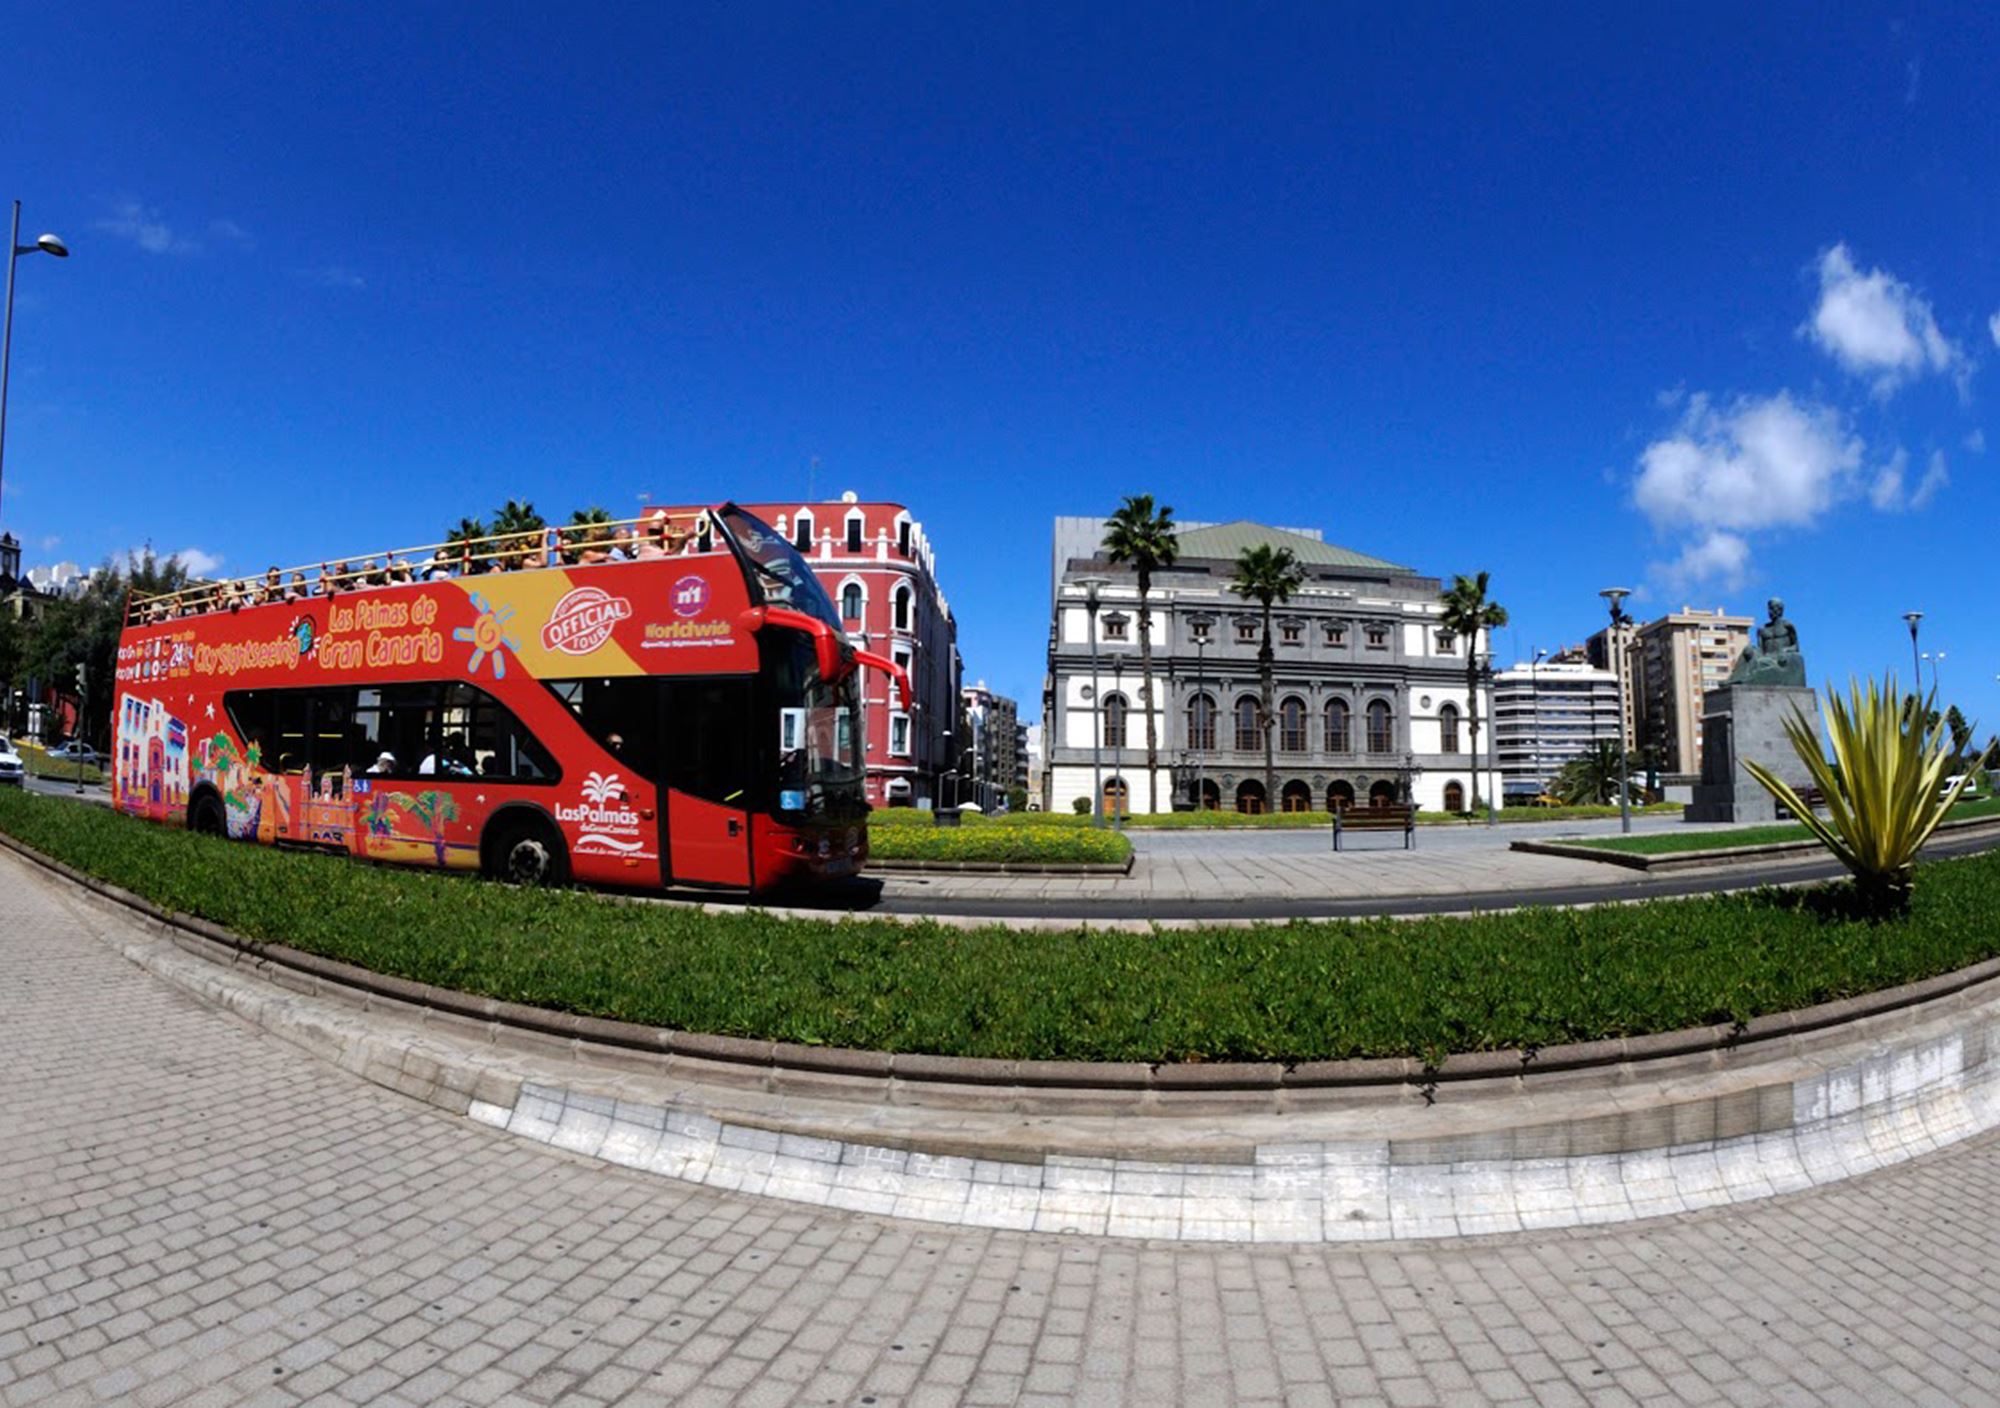 réserver acheter tours Bus Touristique City Sightseeing Las Palmas de Gran Canaria billets visiter